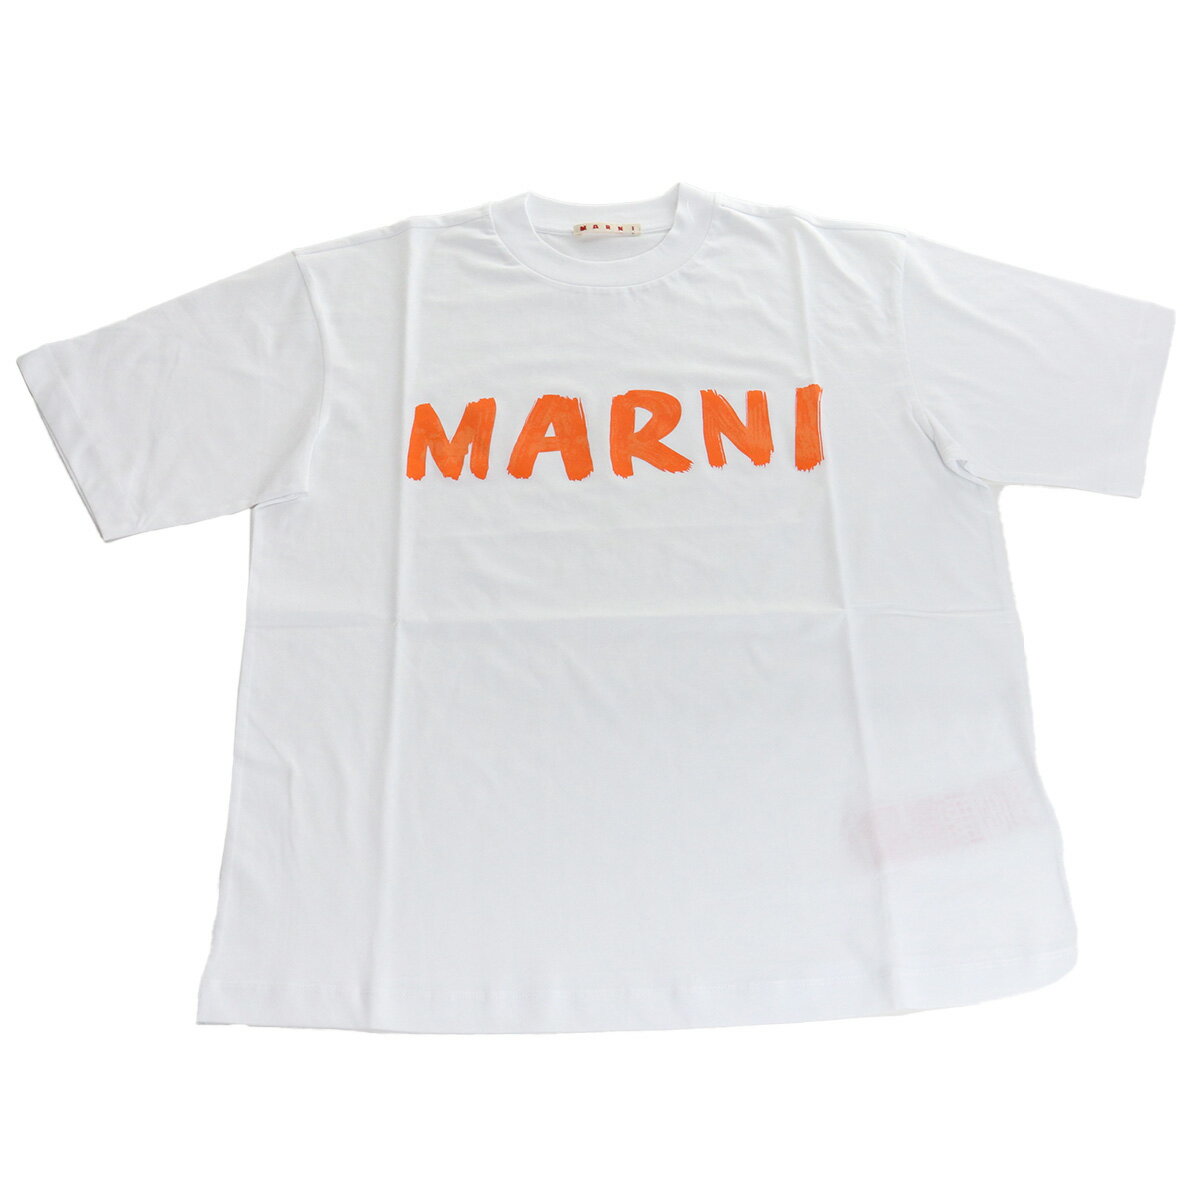 マルニ MARNI レディース ロゴTシャツ マルニレタリングプリント オーバーサイズTHJET49EPH USCS11 L2W01ホワイト系 apparel-01 ts-01 tcld-bhsn